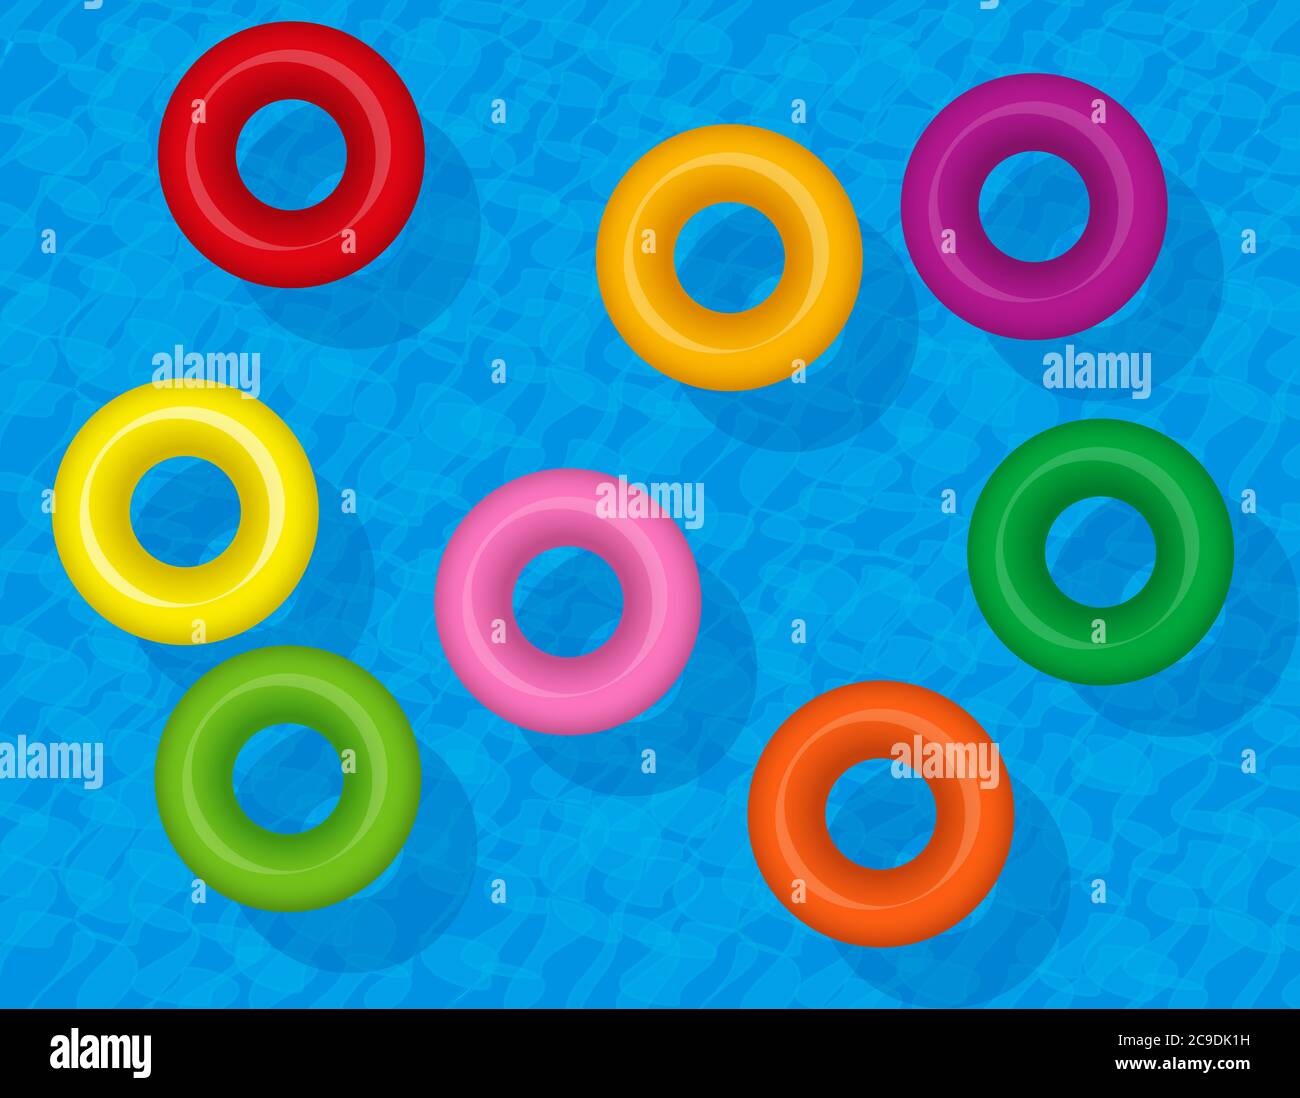 Anelli da bagno, tubi d'acqua gonfiabili colorati, salvavita colorati. Set di ciambelle galleggianti in plastica sull'acqua blu, simbolo del divertimento di gruppo. Foto Stock